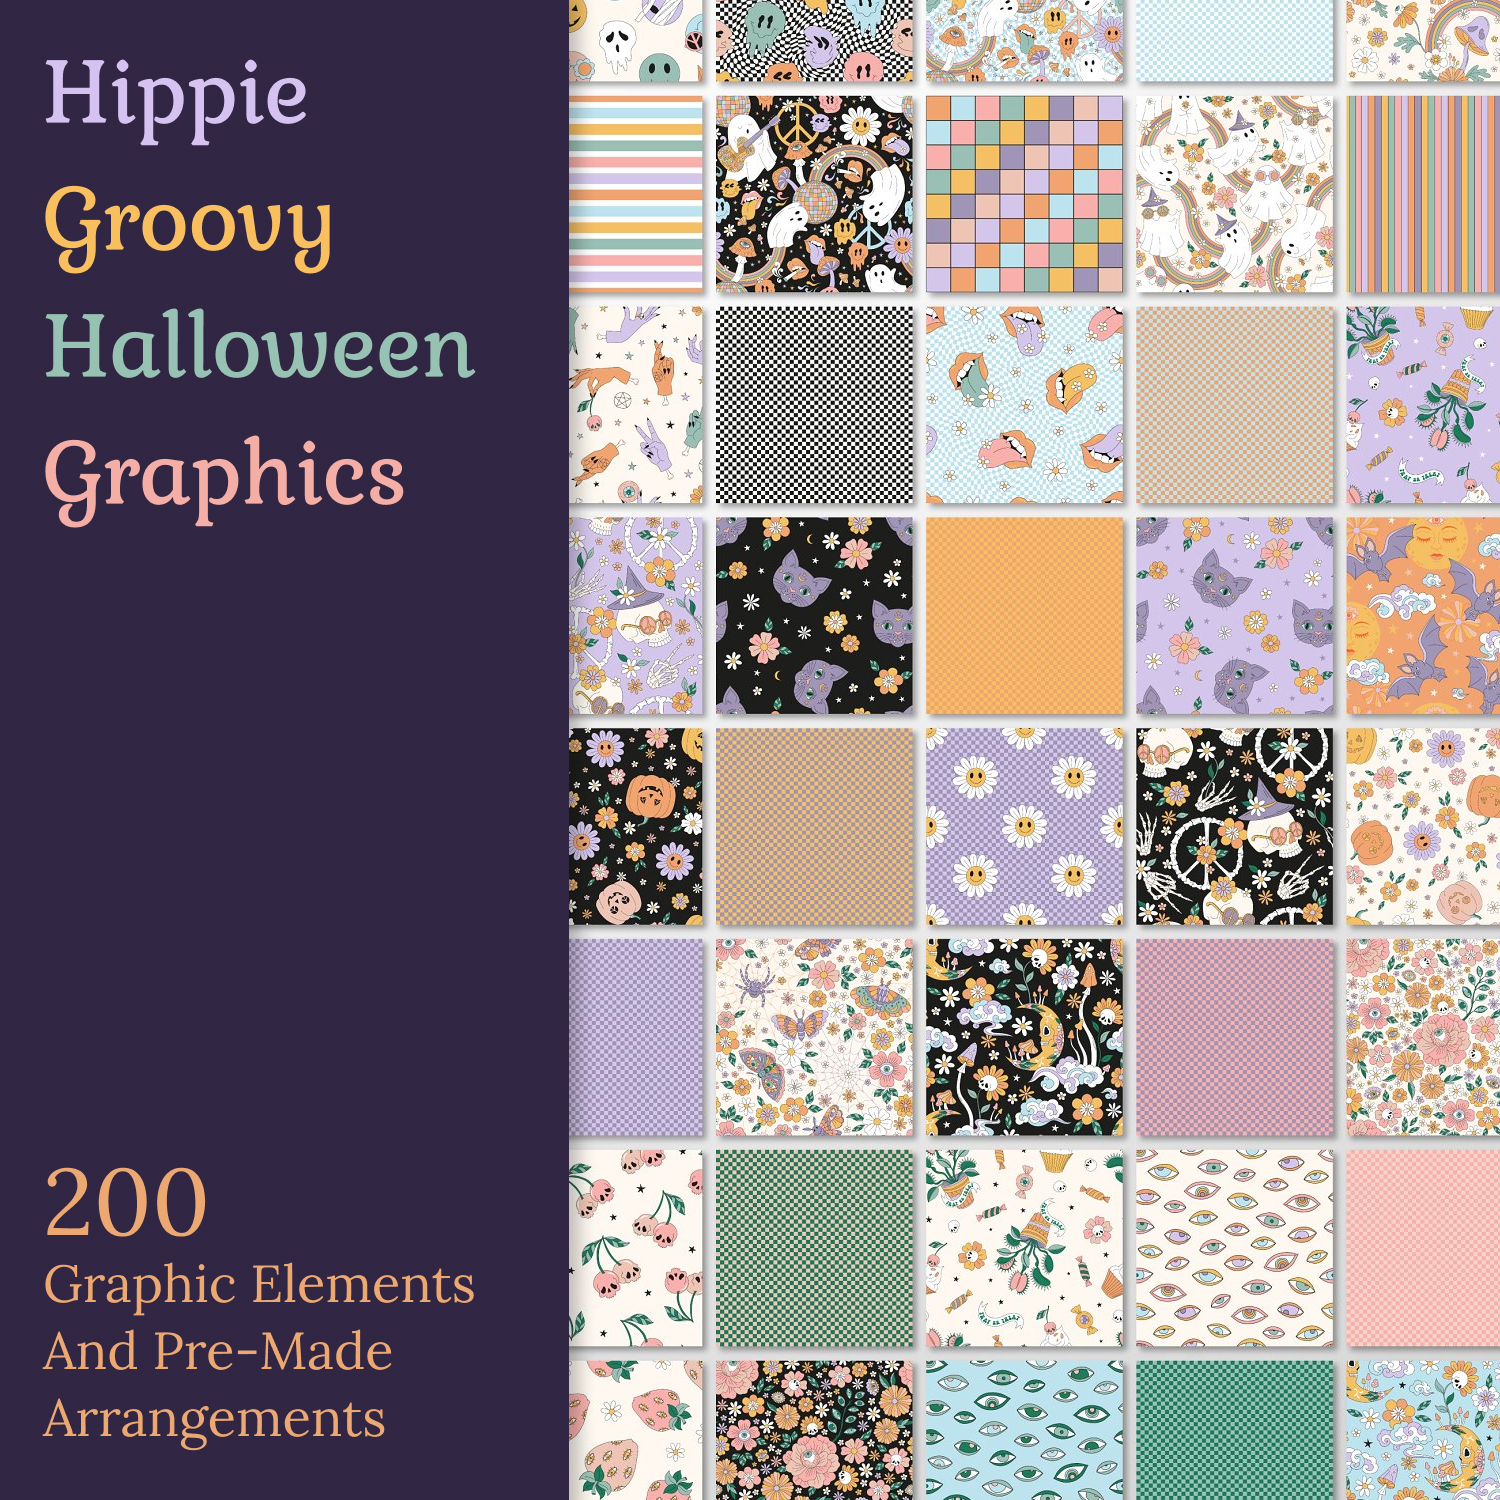 Prints of hippie groovy halloween graphics.